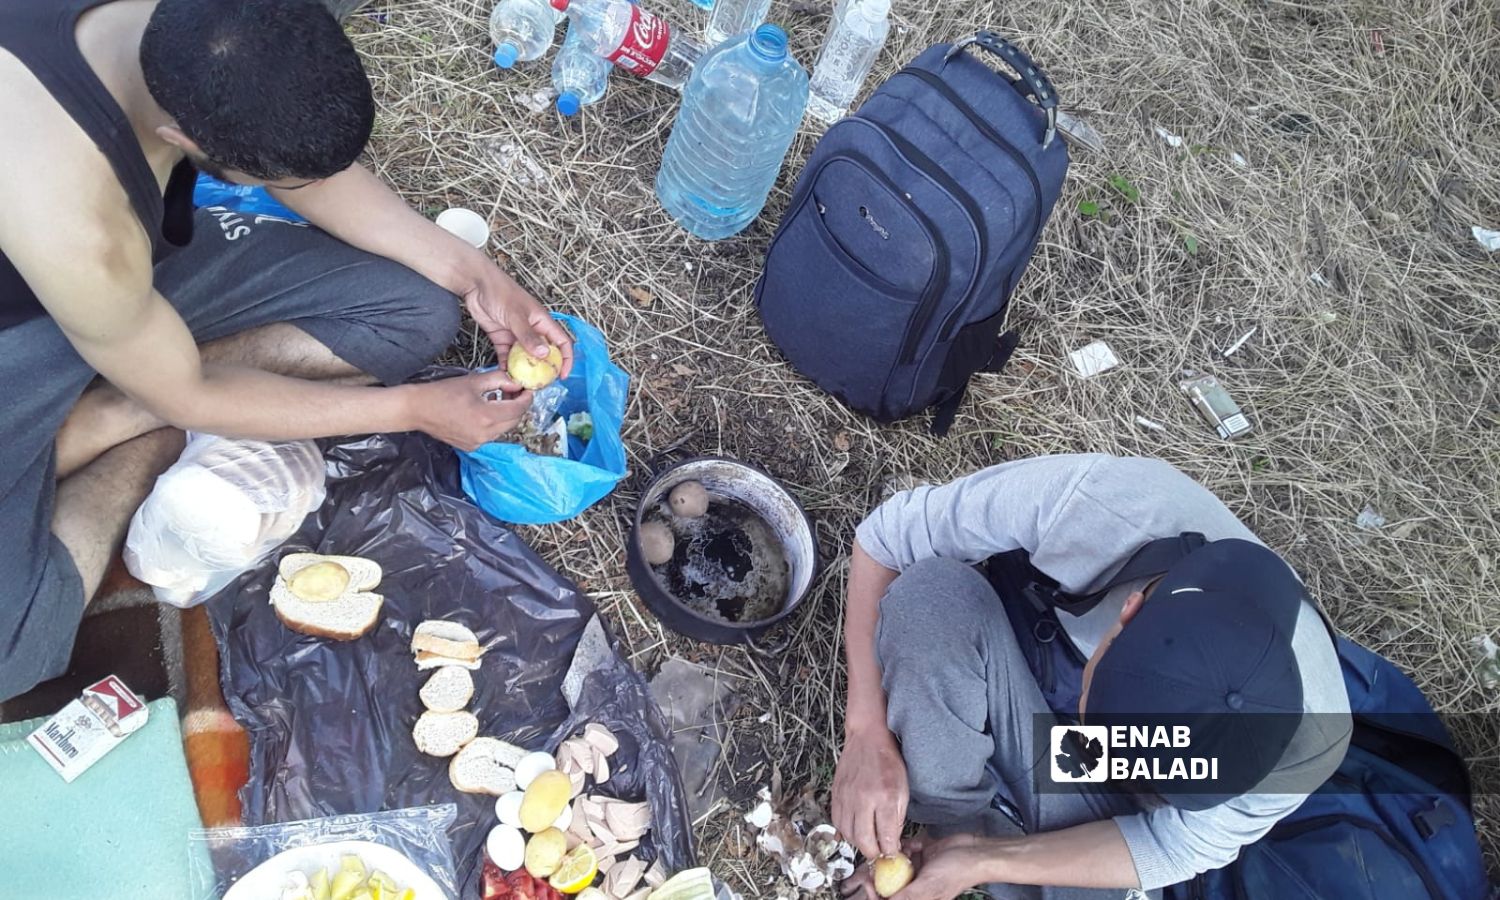 Asylum seekers eating food in Greek forests - July 7, 2022 (Enab Baladi)